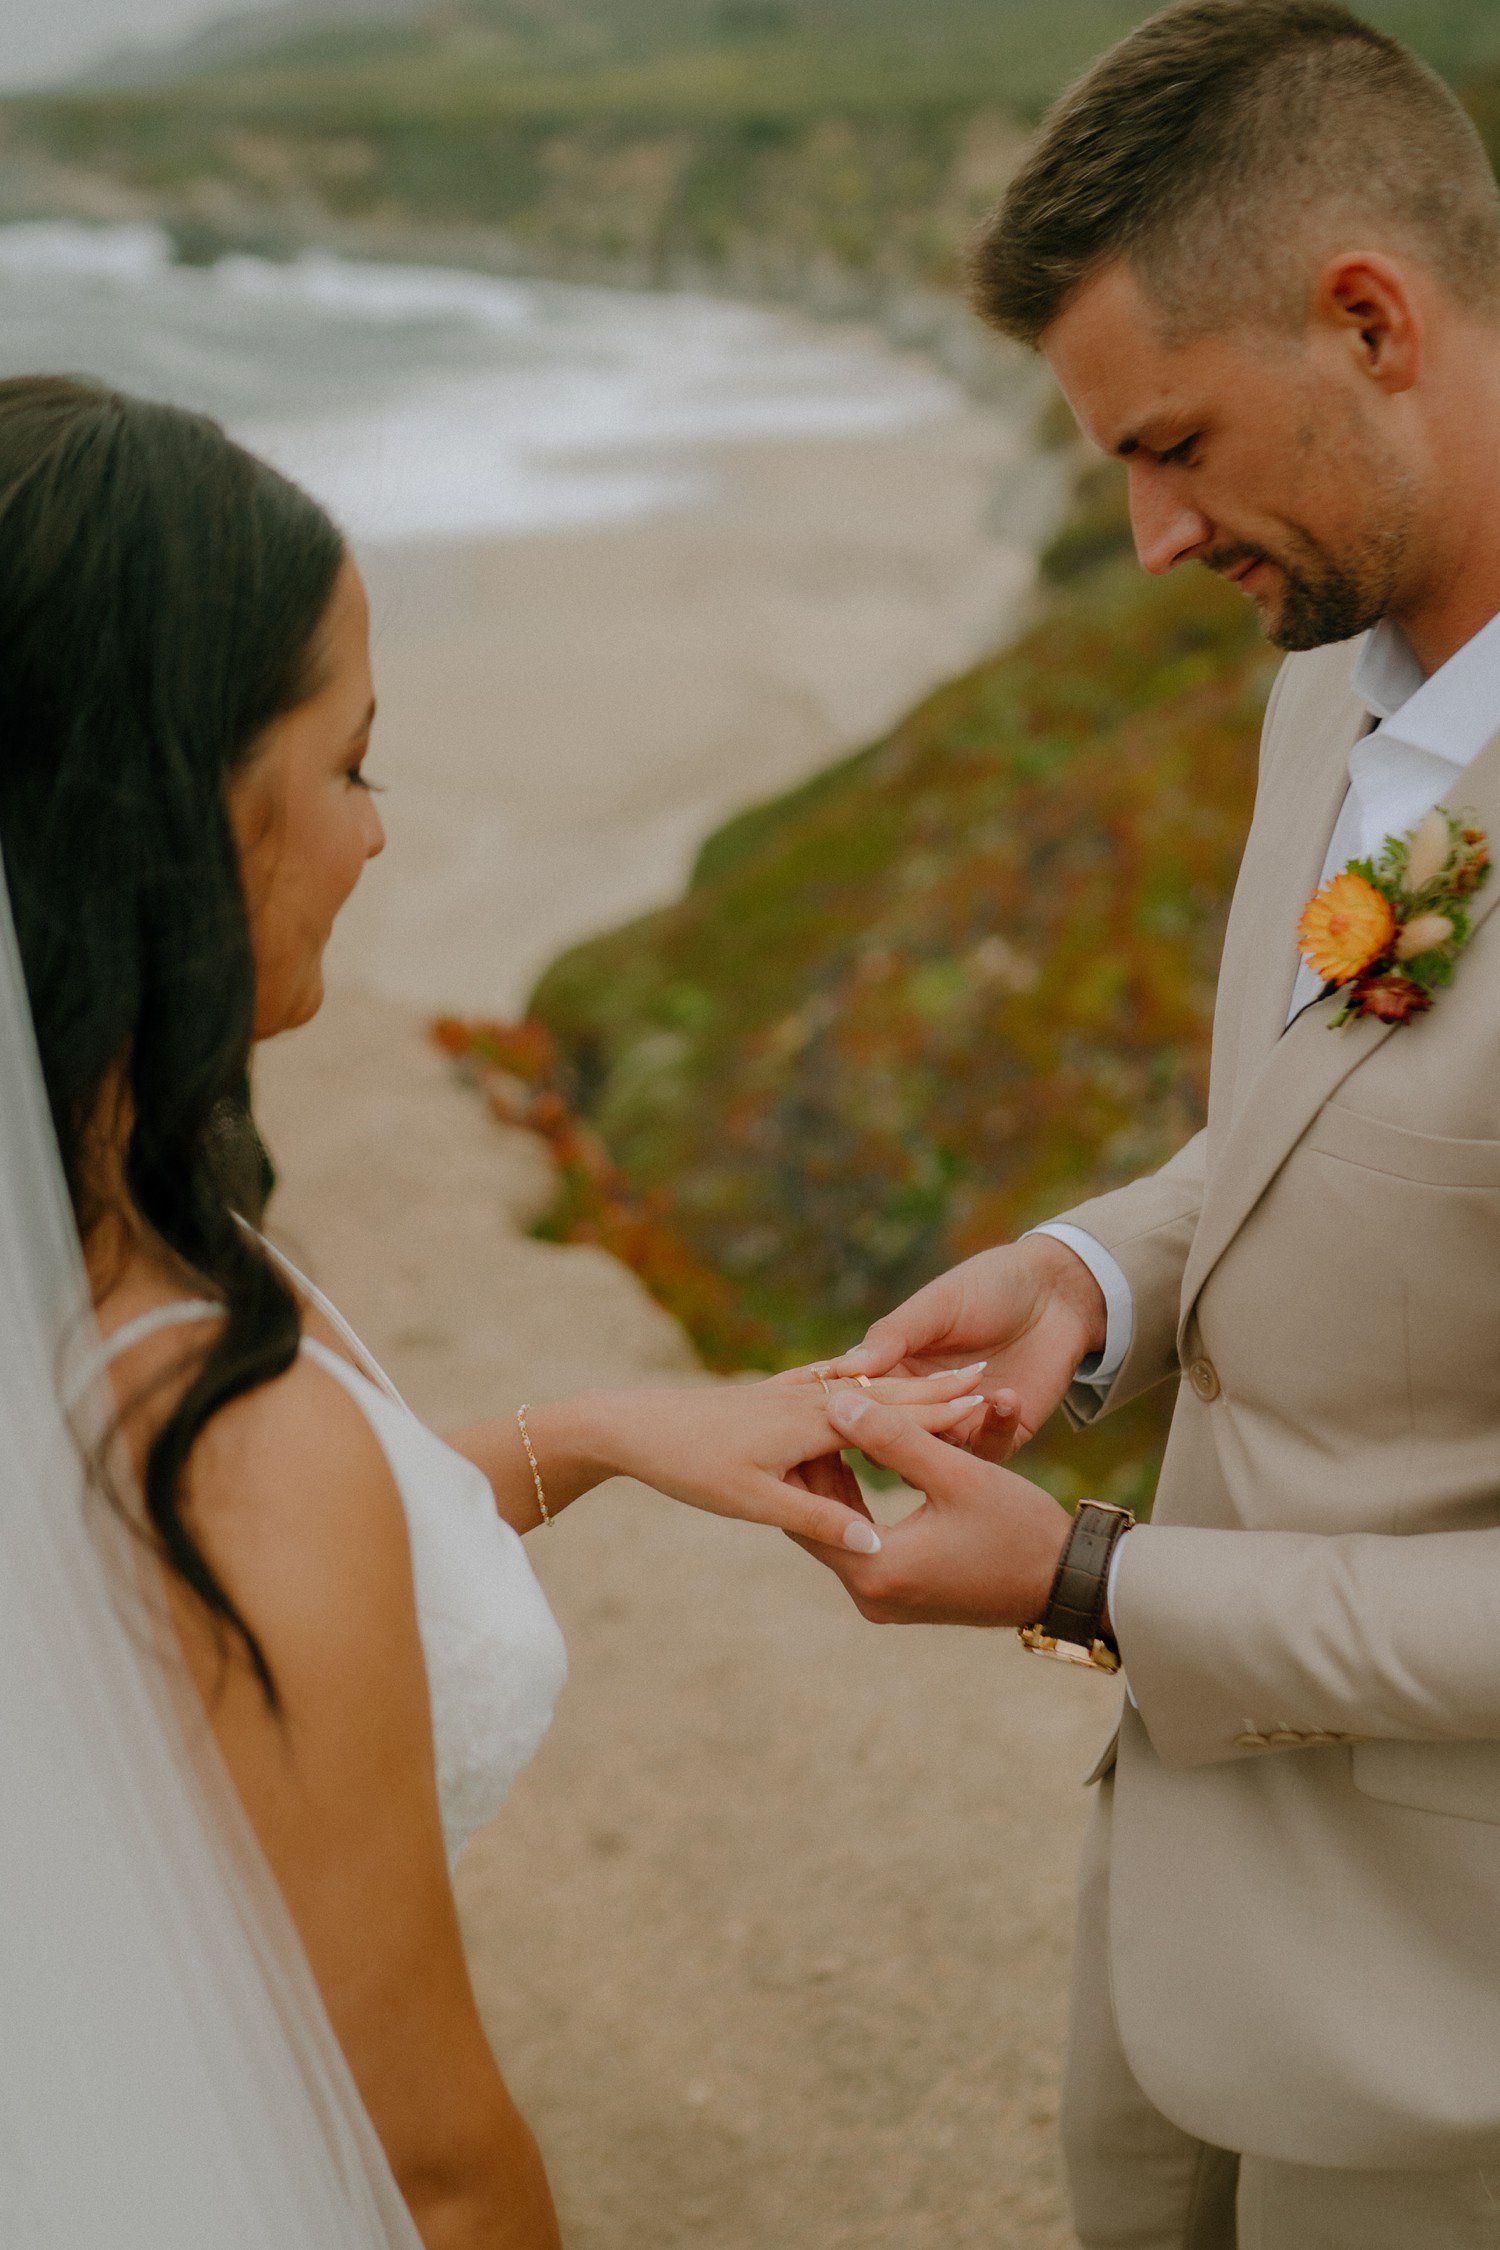 Exchanging wedding rings. 